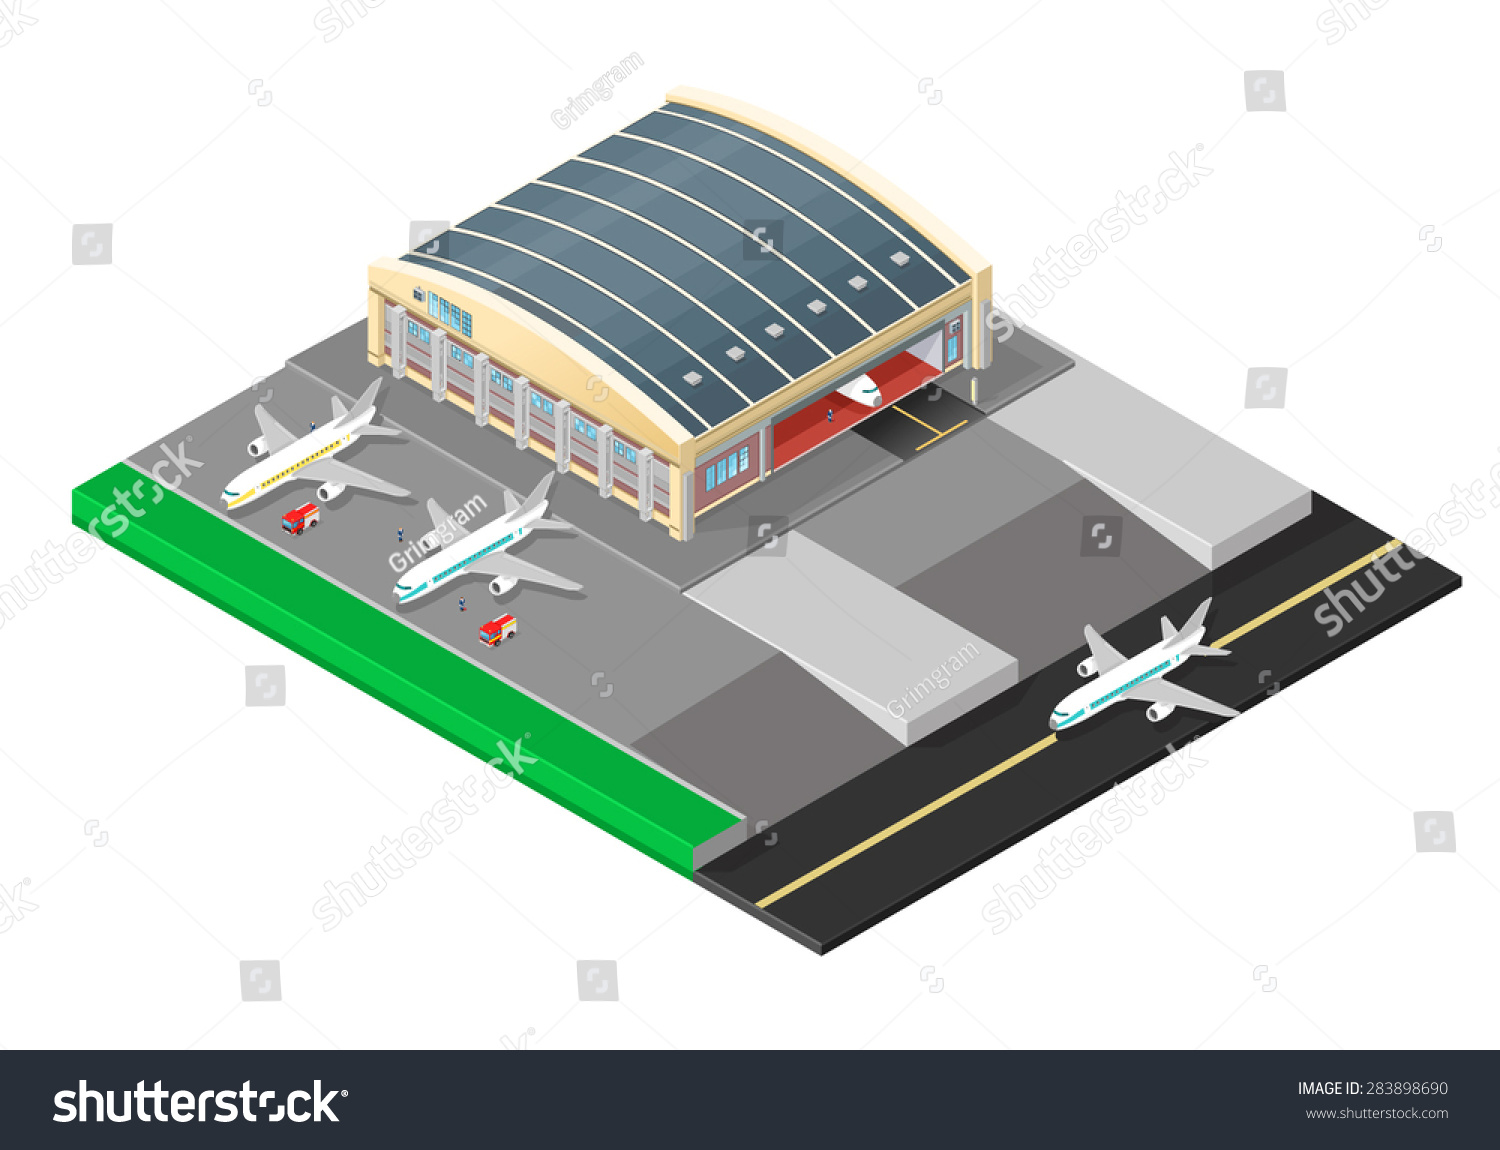 airplane hangar clip art - photo #9